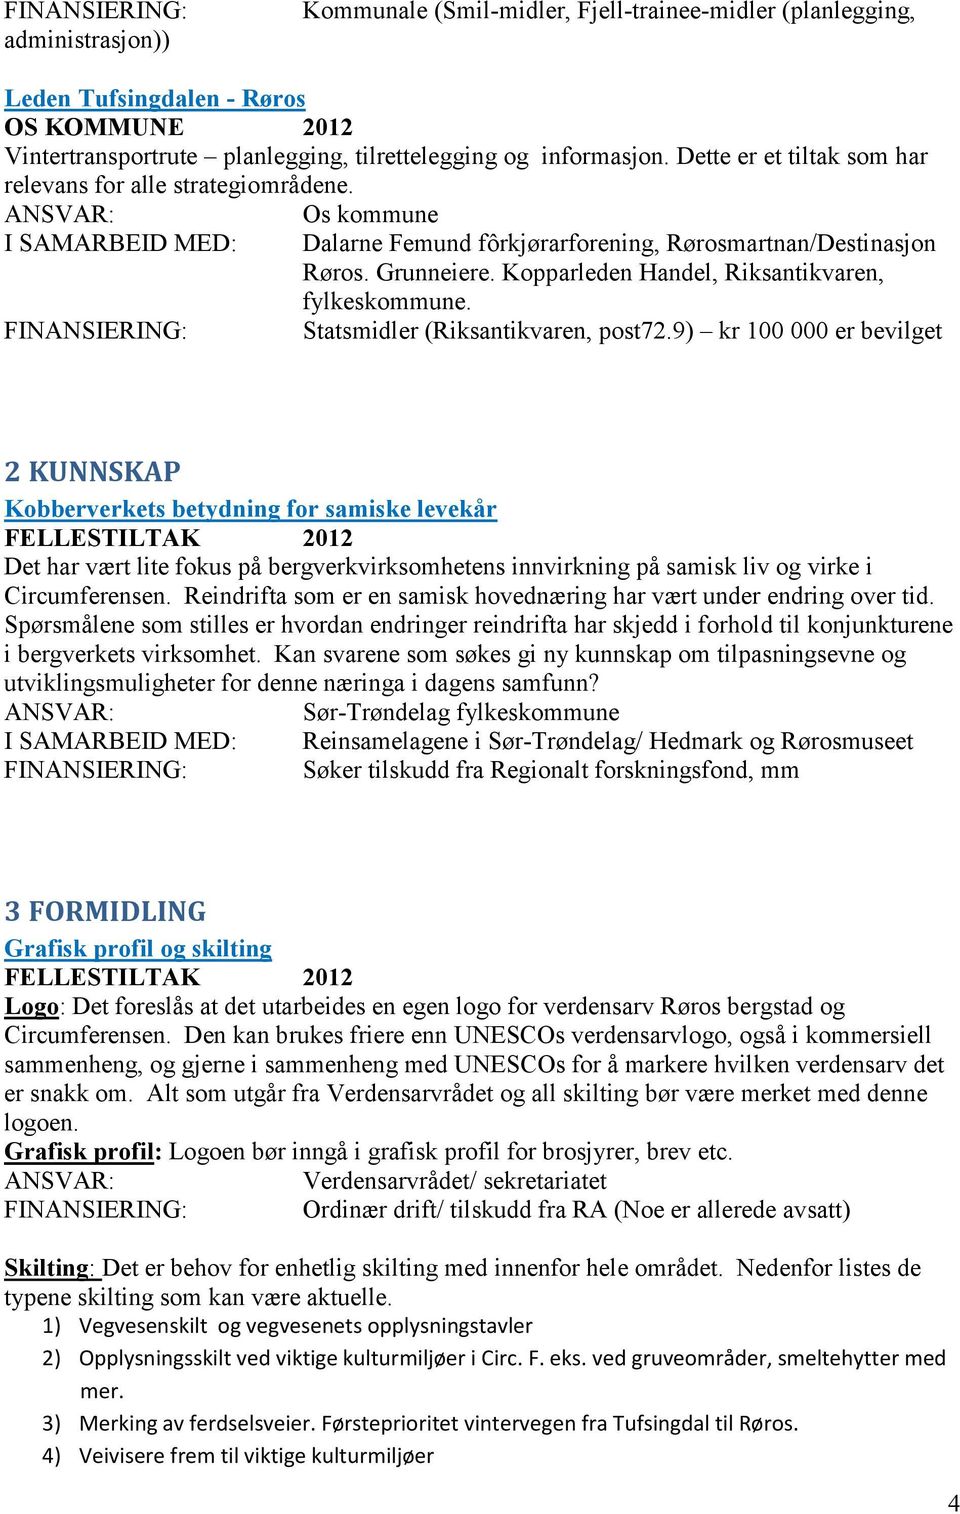 Kopparleden Handel, Riksantikvaren, fylkeskommune. Statsmidler (Riksantikvaren, post72.